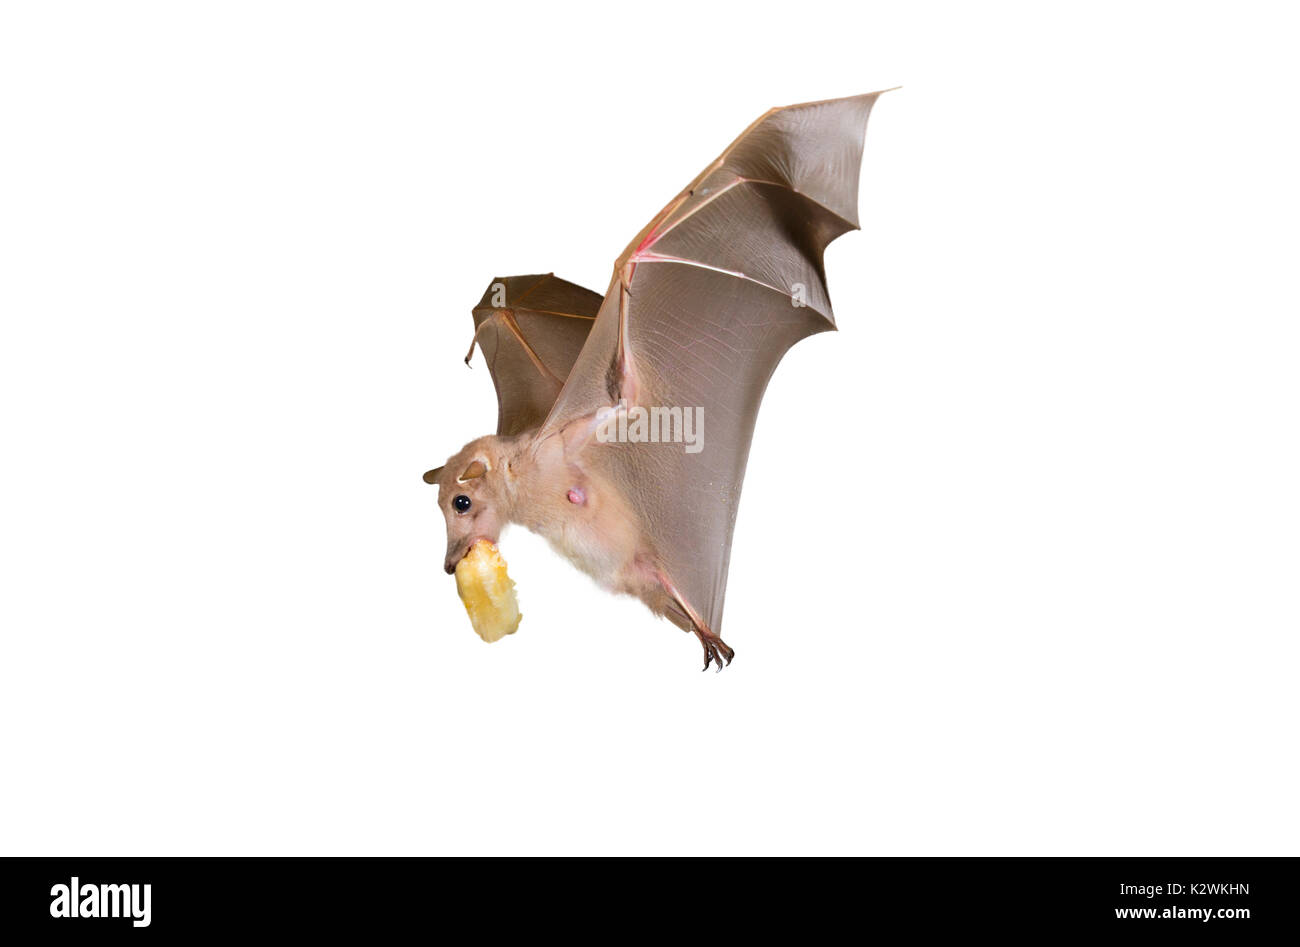 Epauletted gambienne (Epomophorus gambianus fruit bat) en vol avec un fruit dans la bouche, isolé sur fond blanc. Banque D'Images